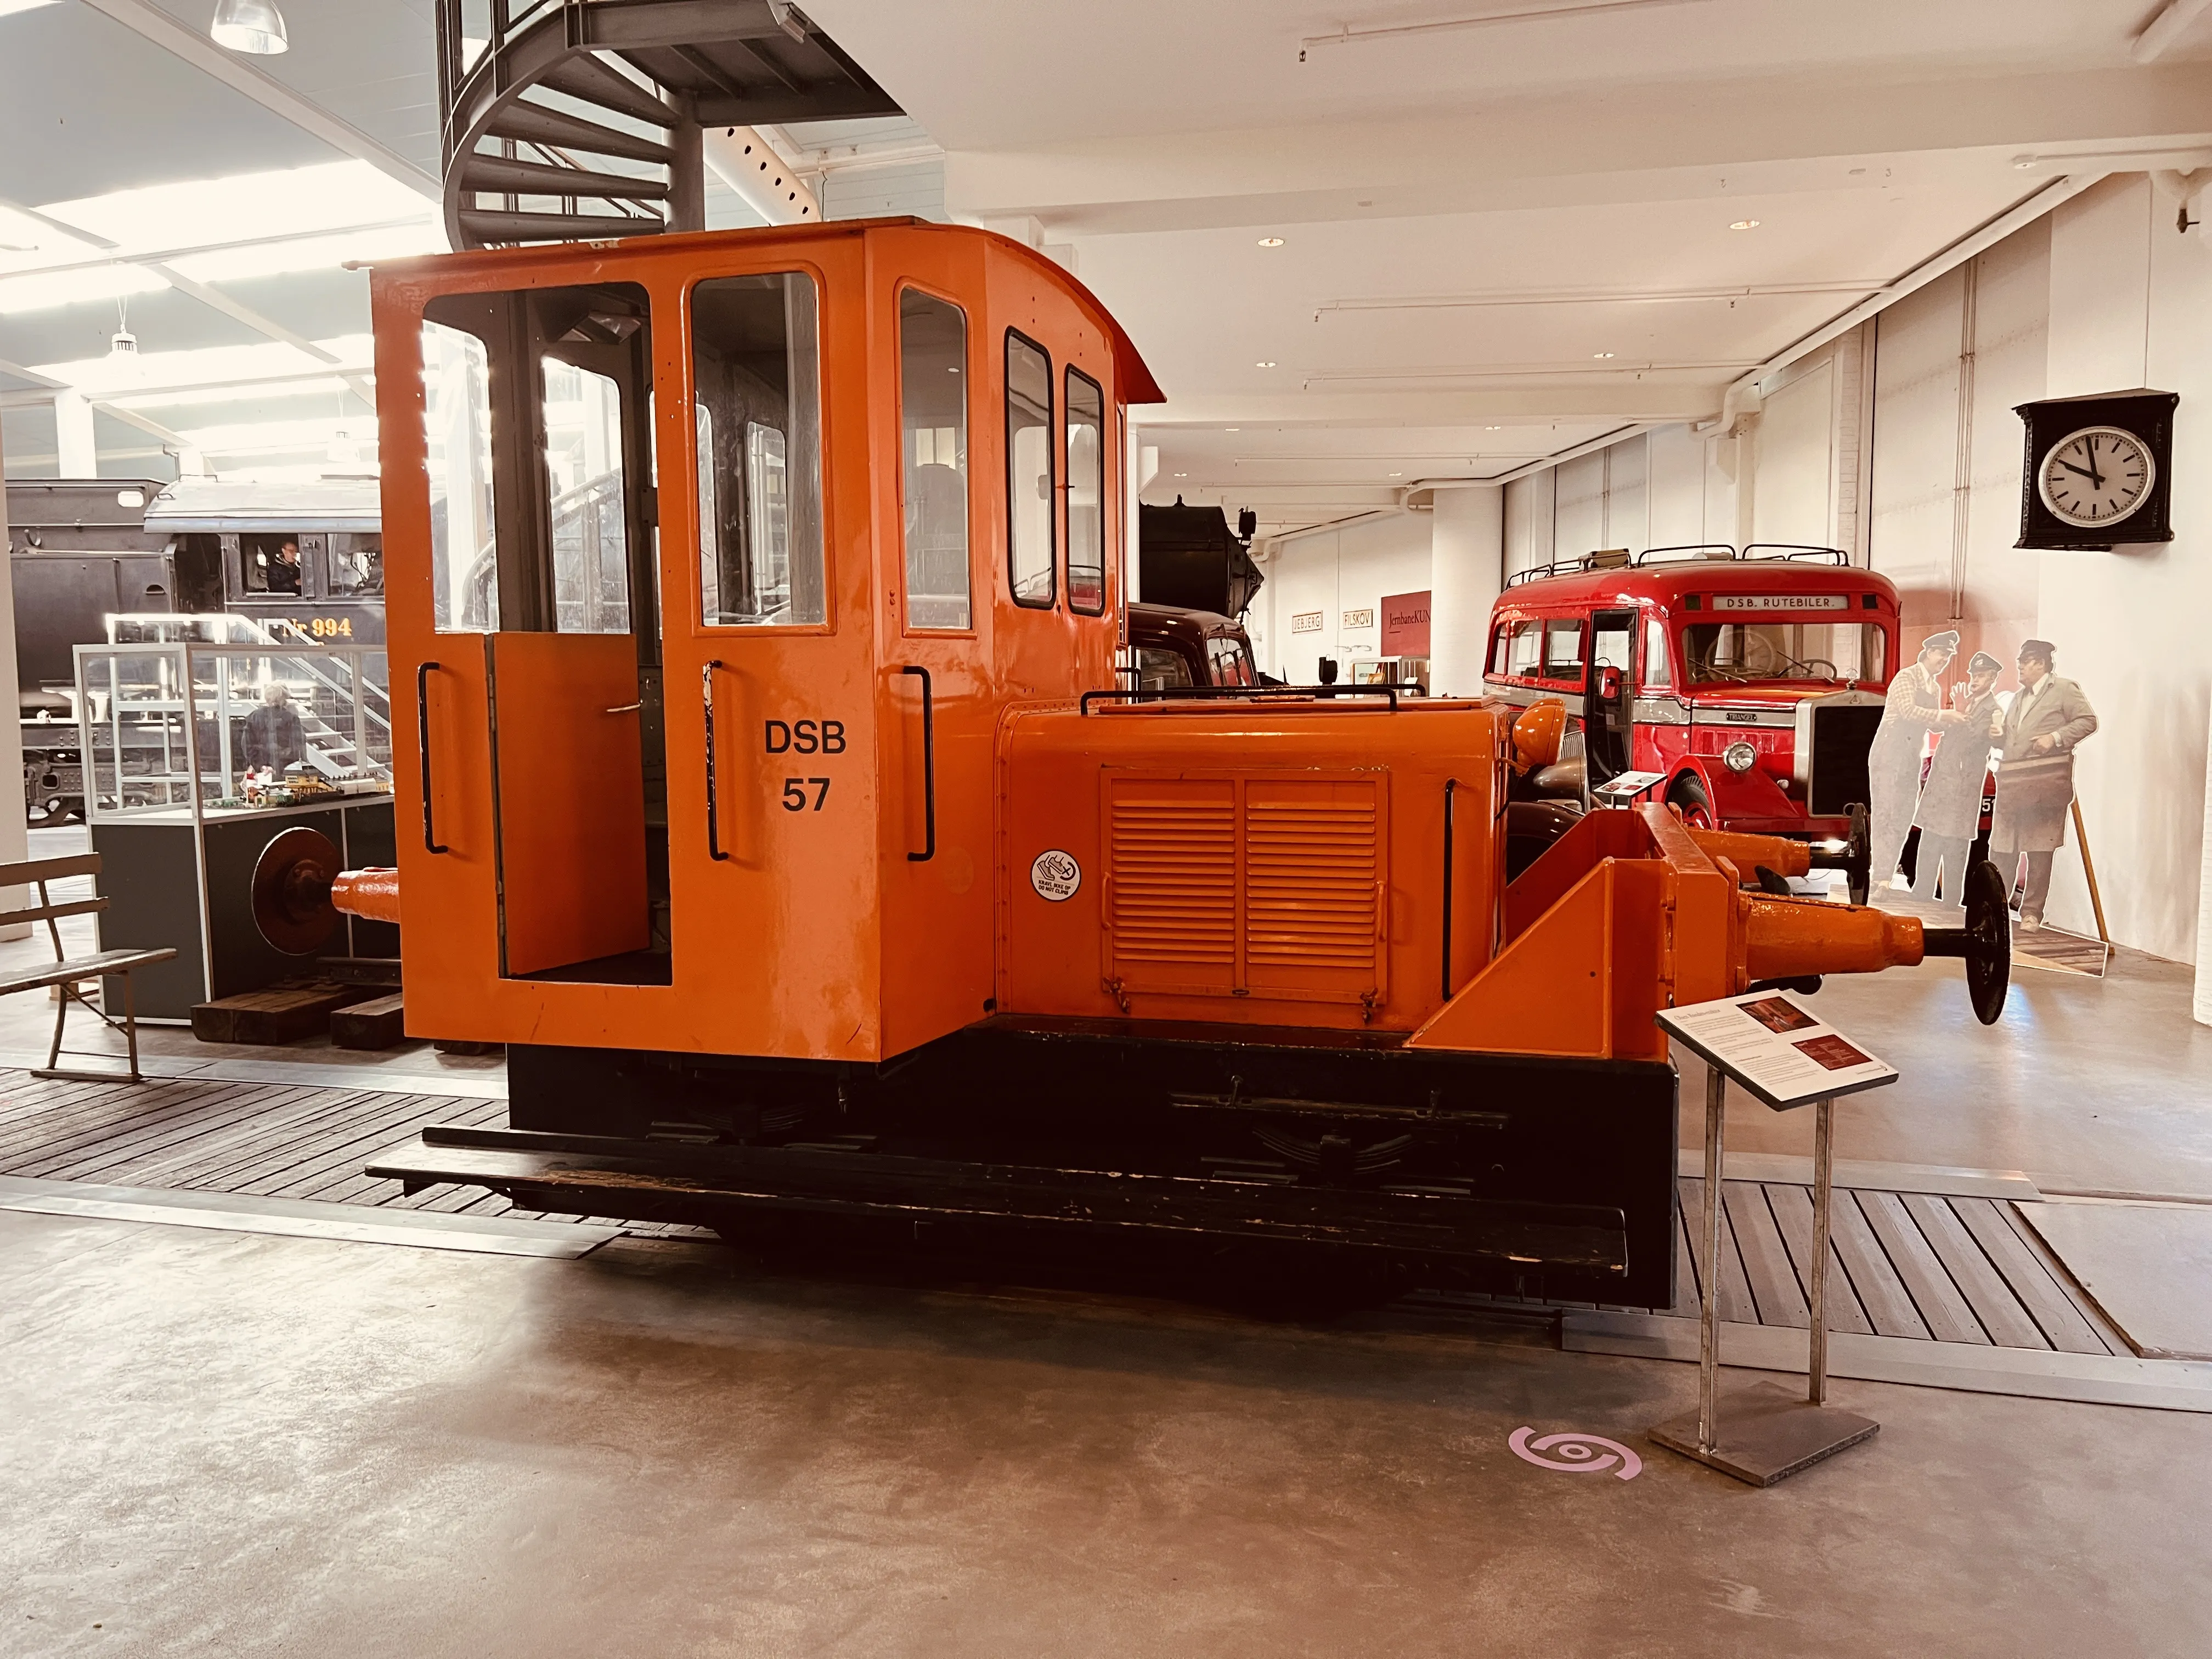 Danmarks Jernbanemuseums mini-udstillingen "Den orange traktor og Olsen-banden" er DSB-traktor nr. 57 omdrejningspunktet, hvor man kan komme ind i førerhuset, og tage et billede sammen med ”Olsen-banden” og DSB-traktoren.